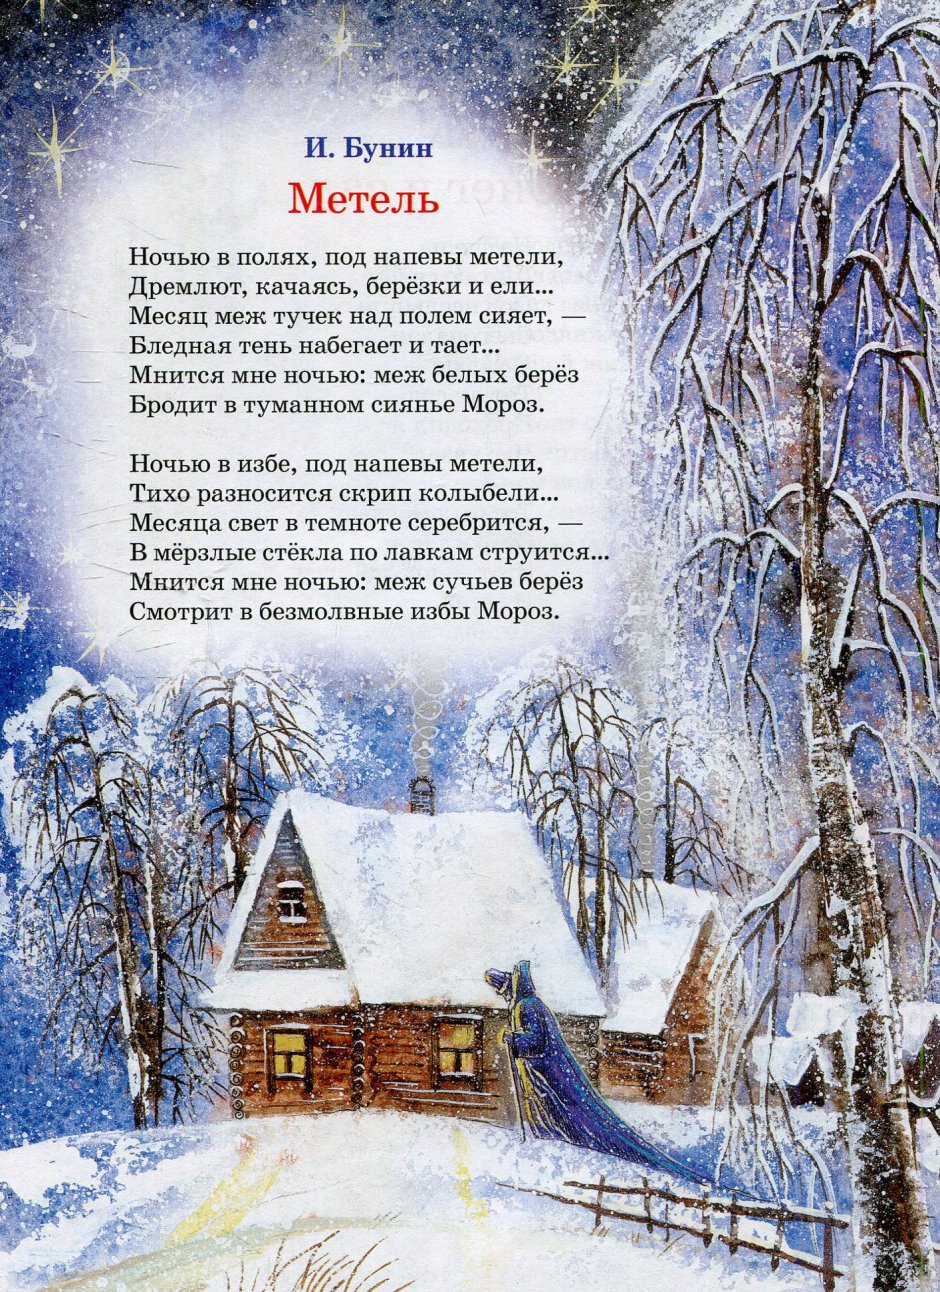 Стихи о зиме русских поэтов